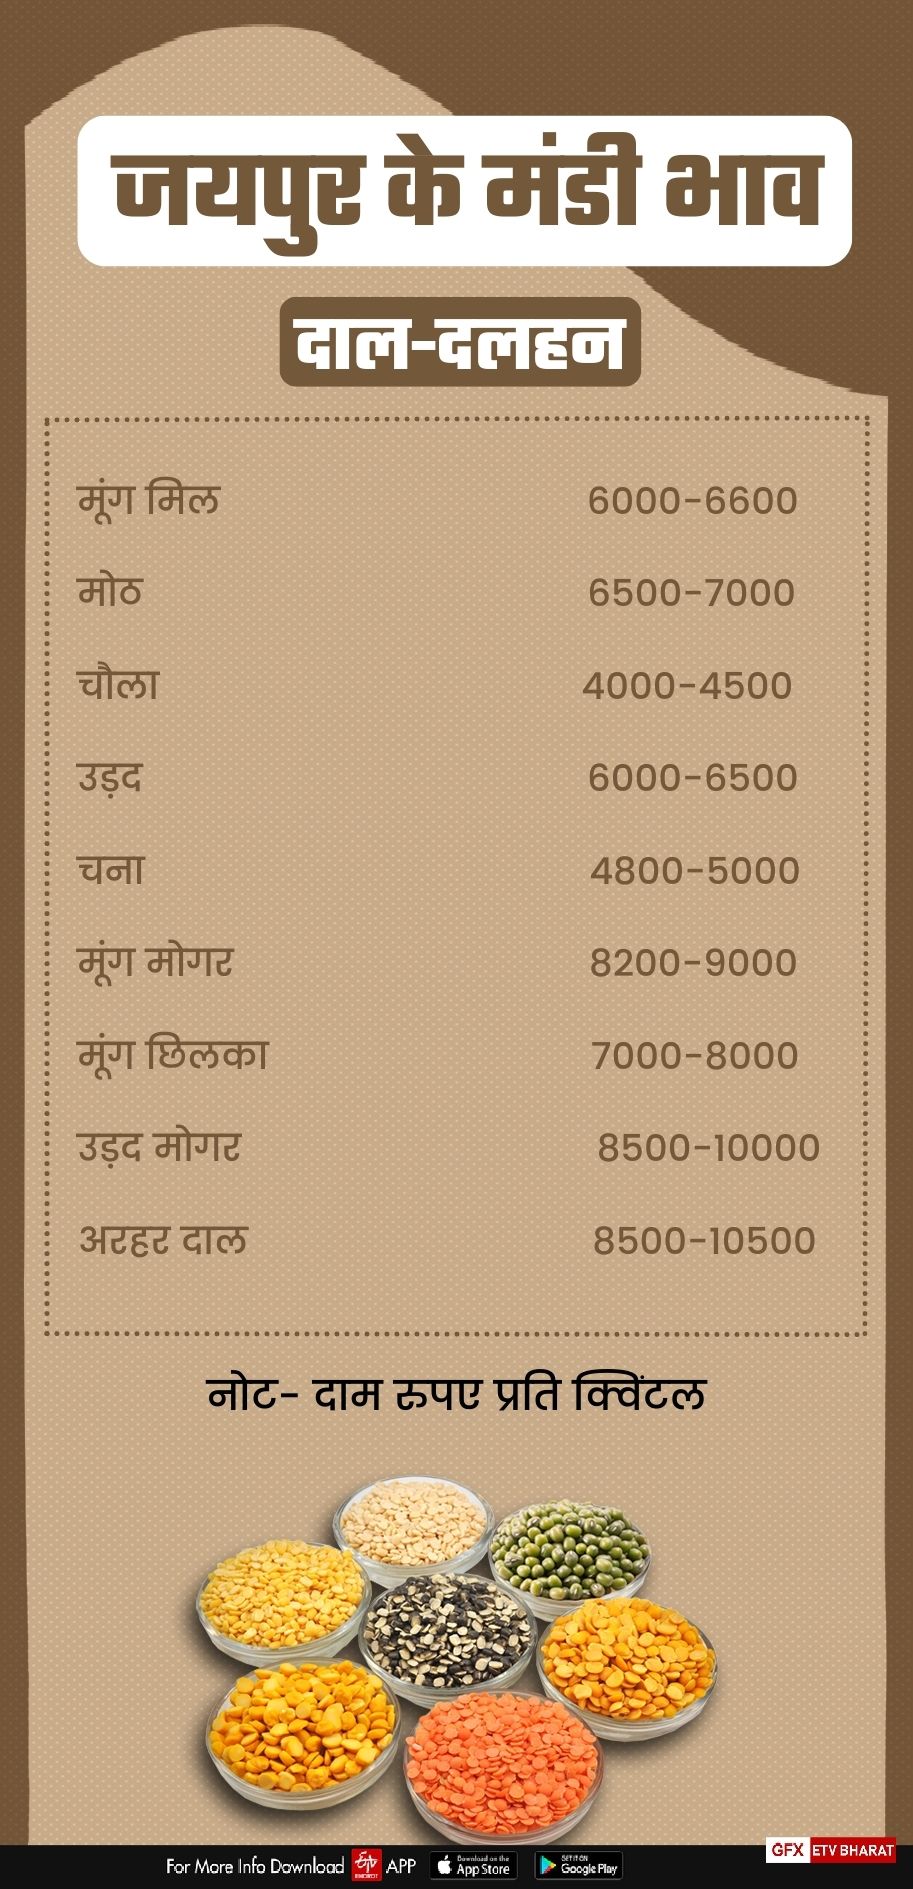 Jaipur Mandi Rate